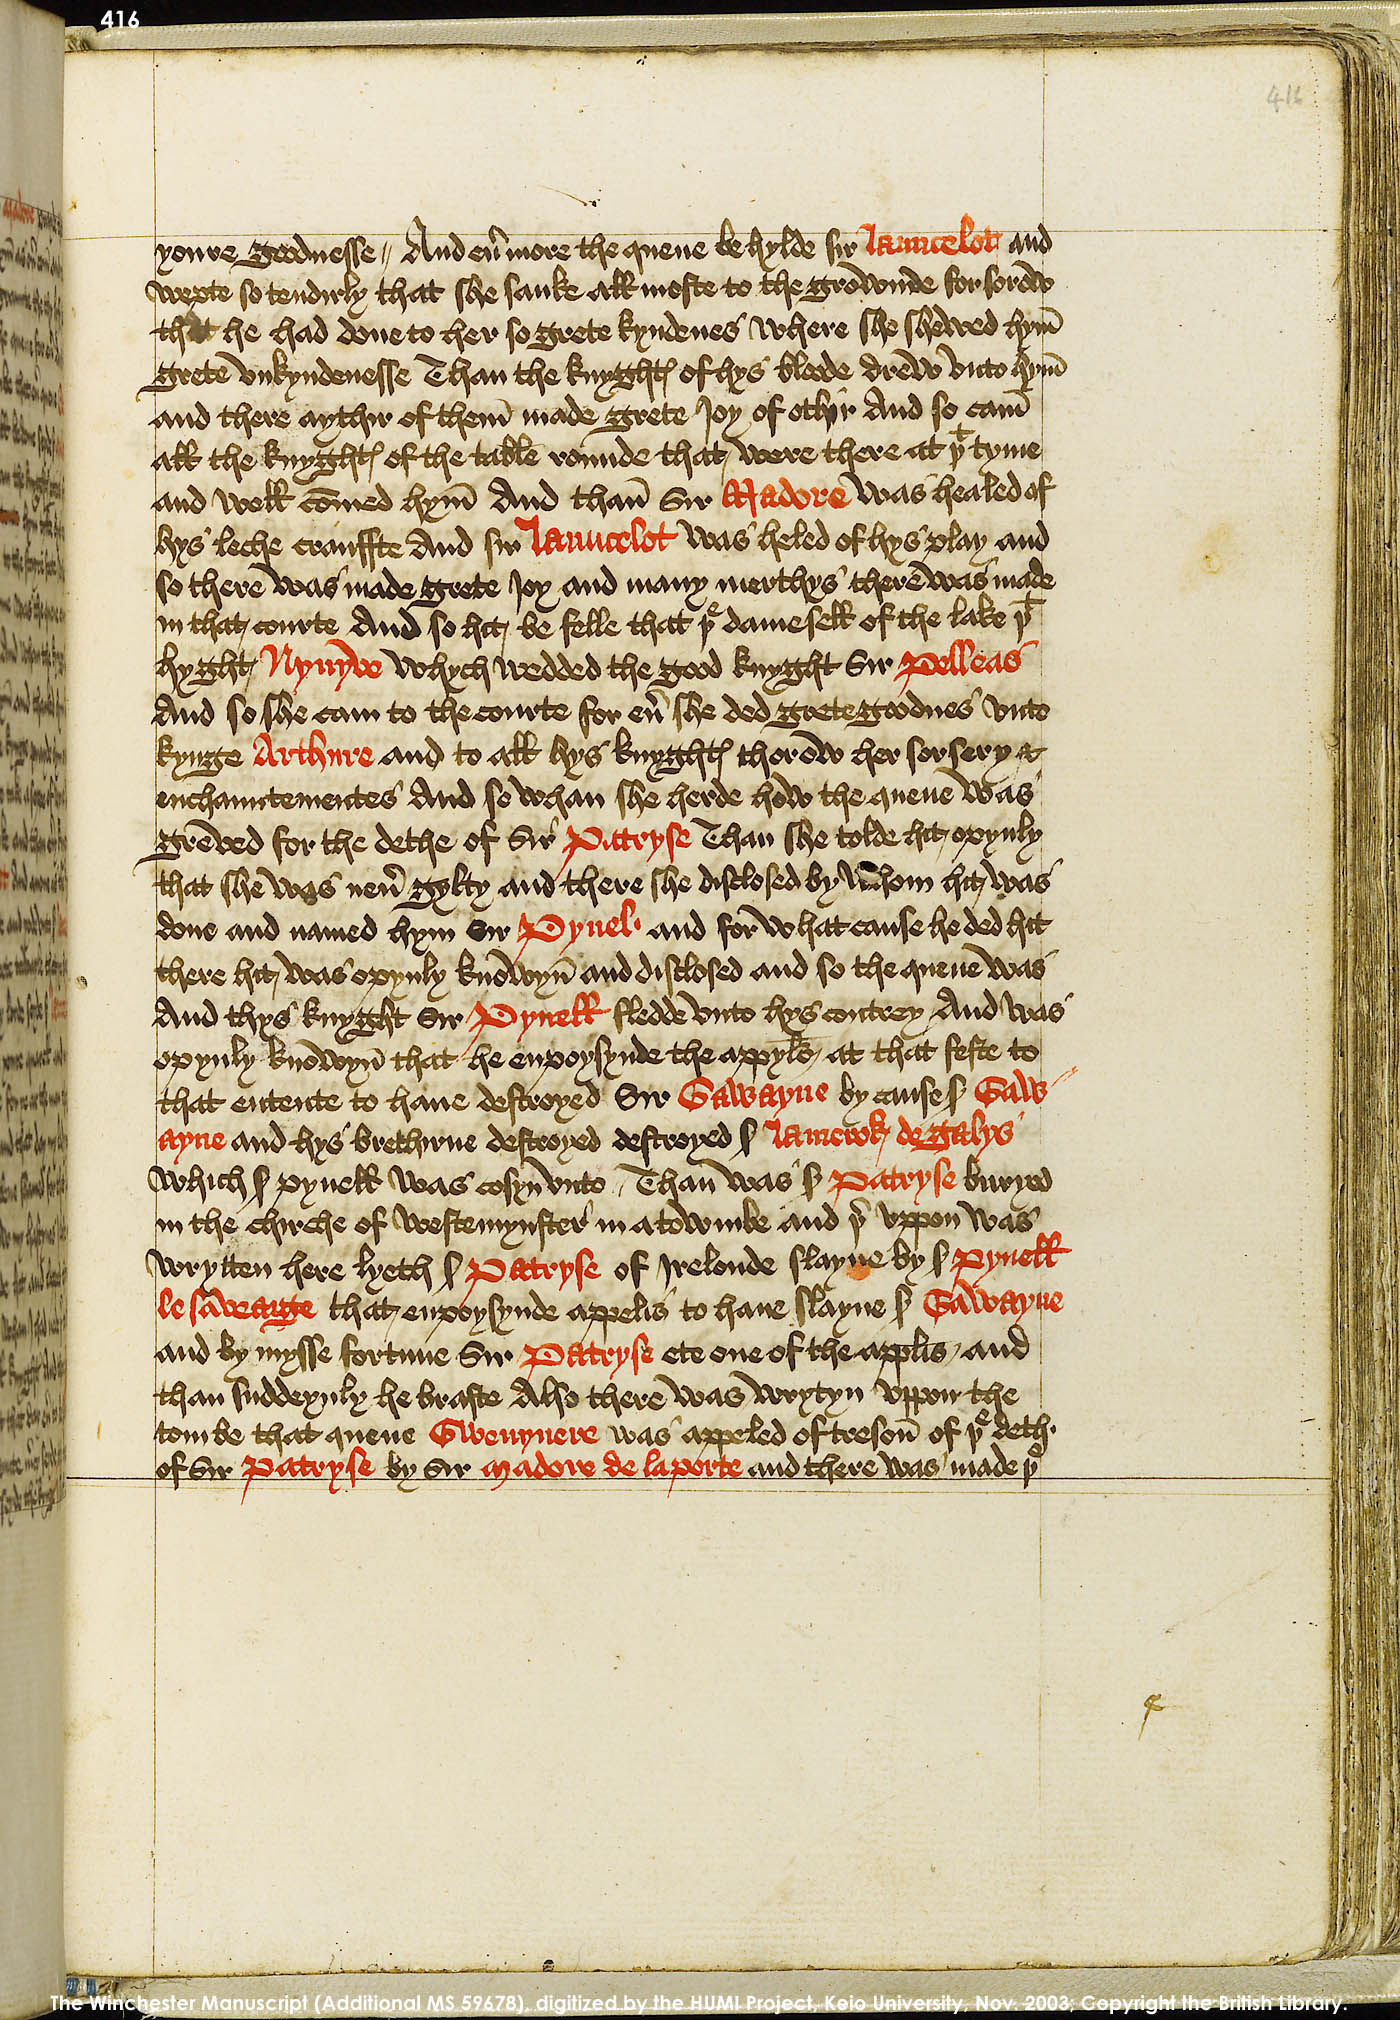 Folio 416r